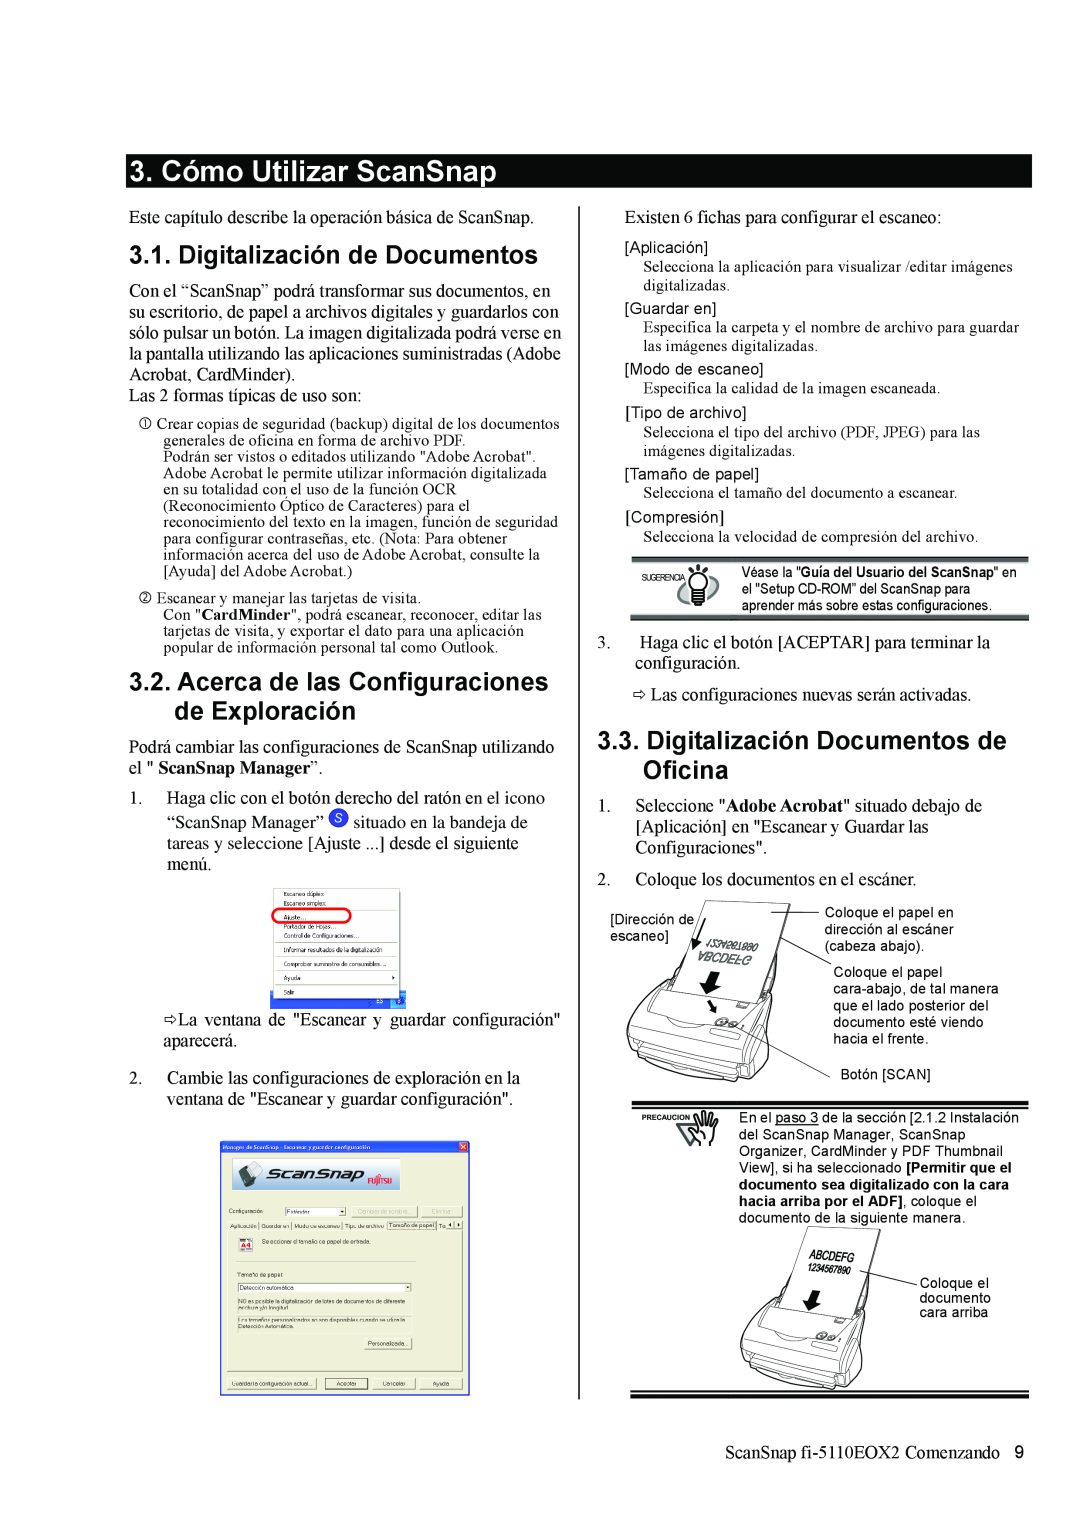 Fujitsu fi-5110EOX2 manual 3. Cómo Utilizar ScanSnap, Digitalización de Documentos, Digitalización Documentos de Oficina 